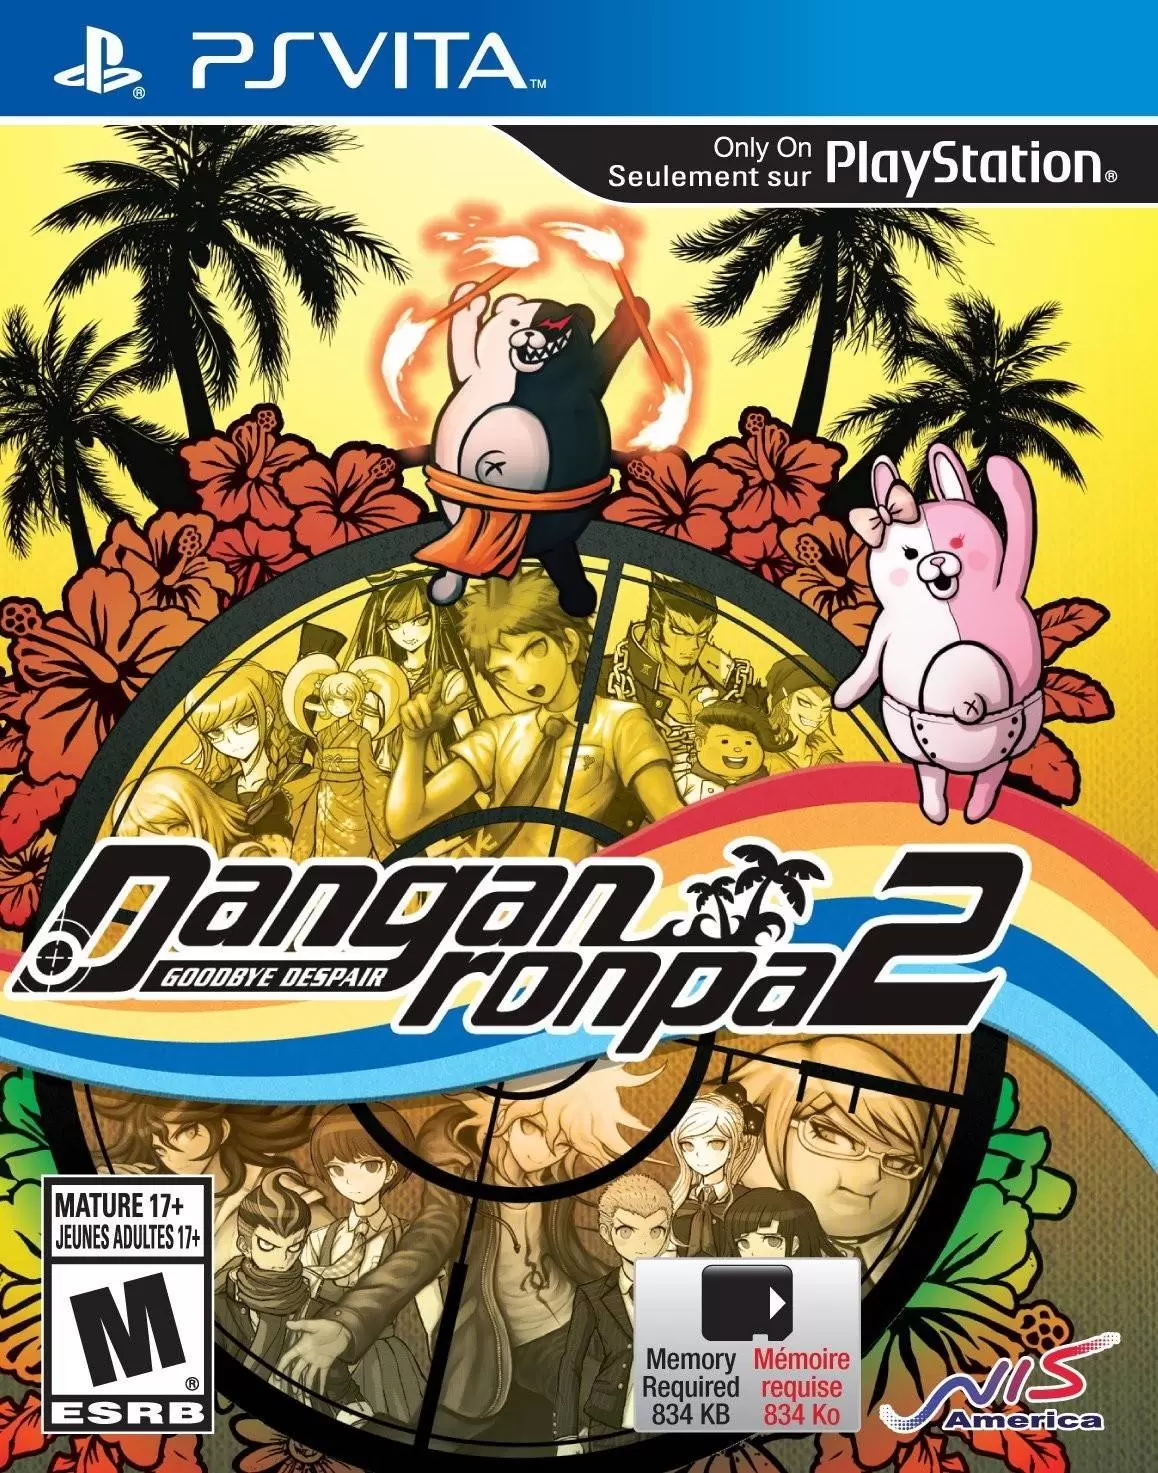 PS Vita Games - Danganronpa 2: Goodbye Despair